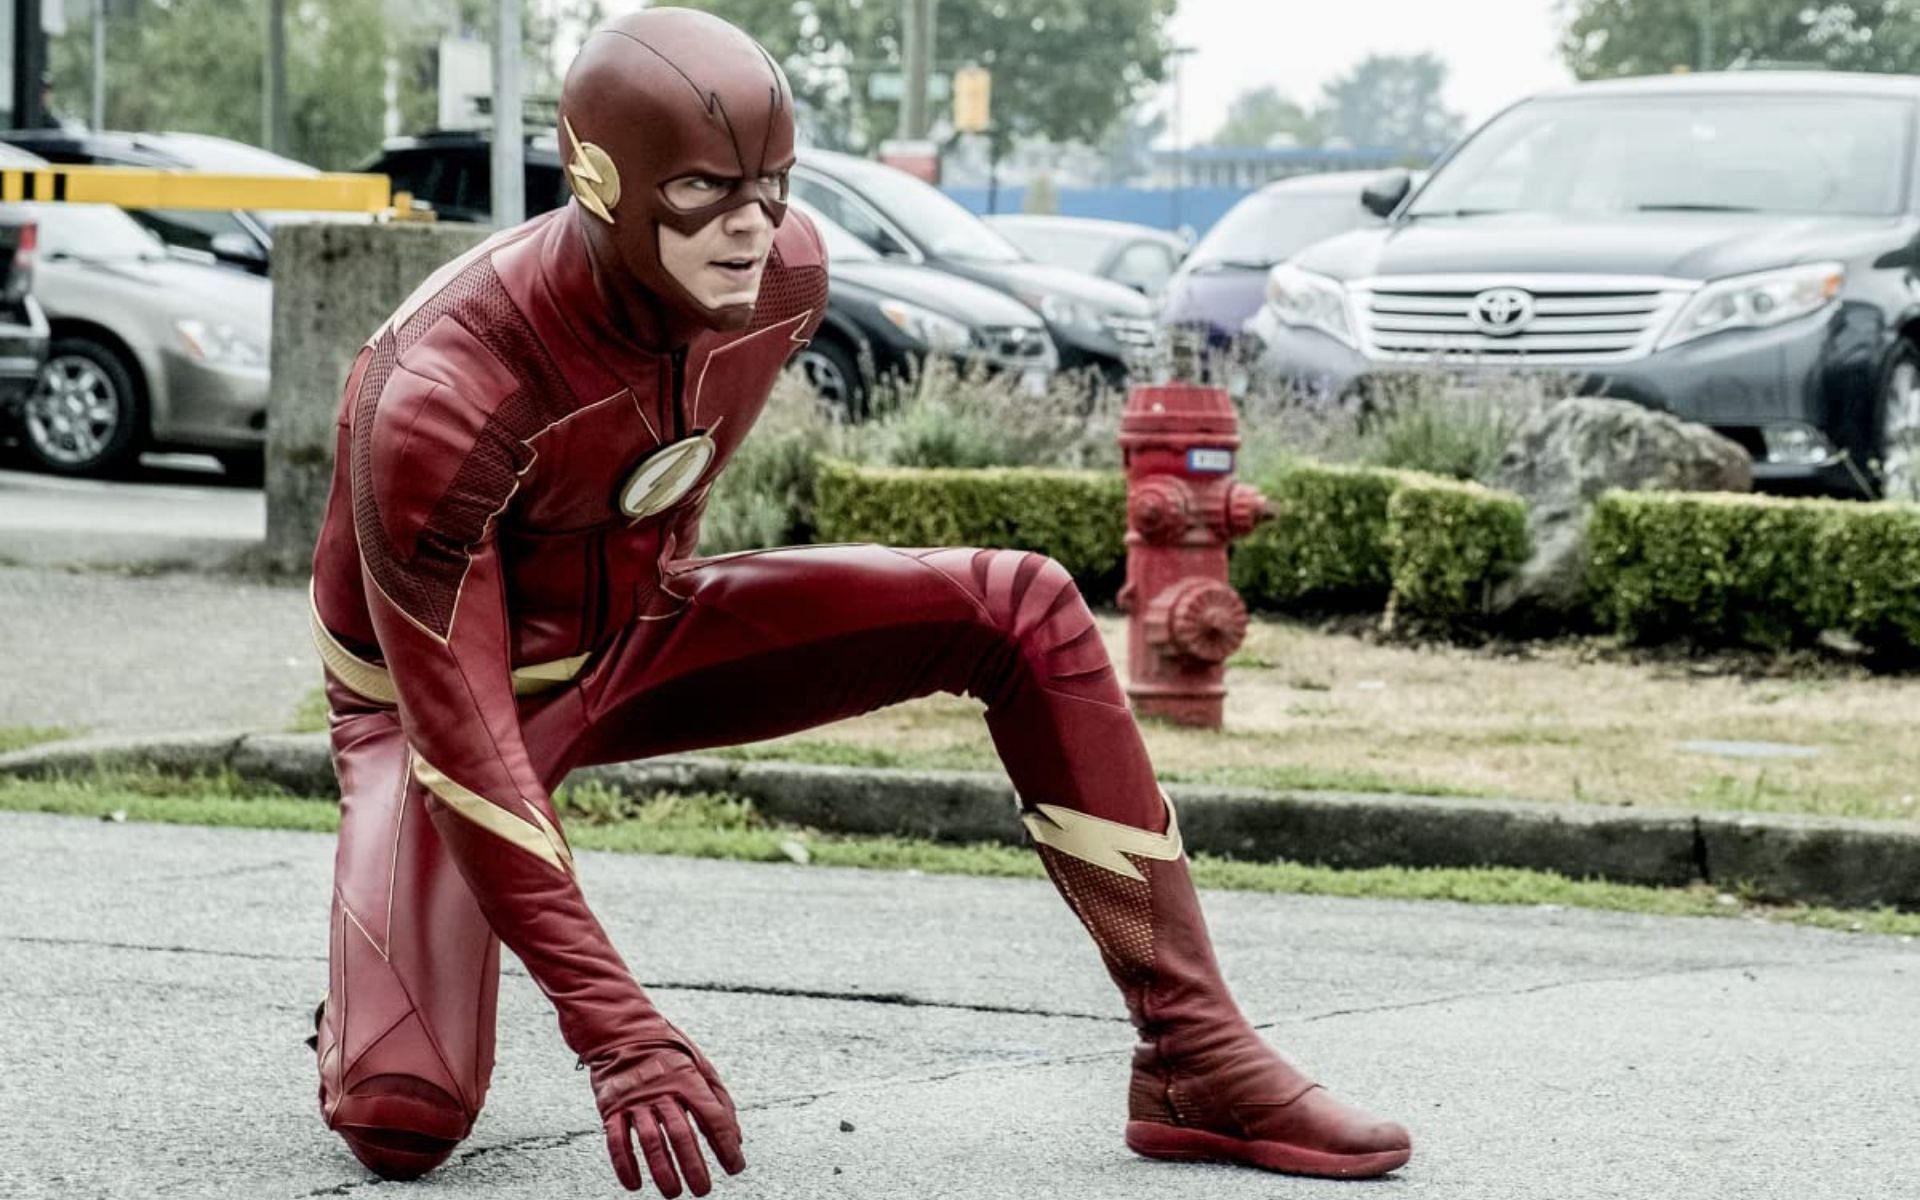 Grant Gustin in The Flash (Image via IMDb)